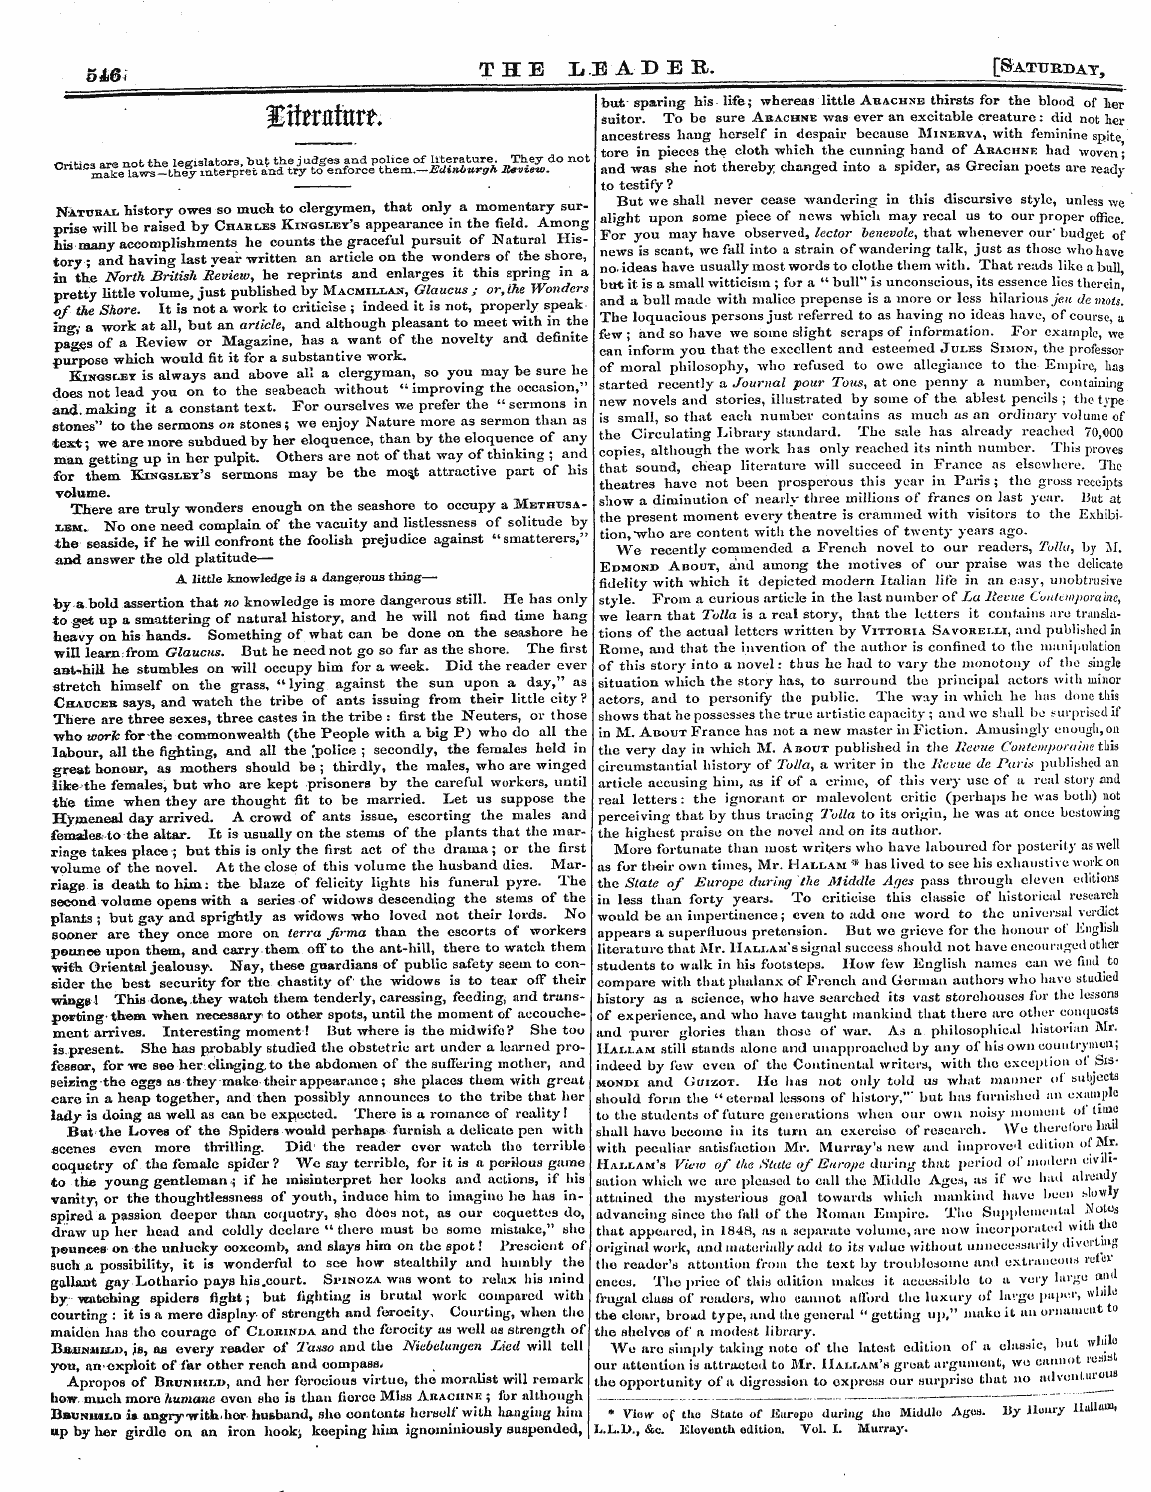 Leader (1850-1860): jS F Y, 2nd edition - Ctr&Gt;*±. Rt+Vv Av 3bxurwiurw ^